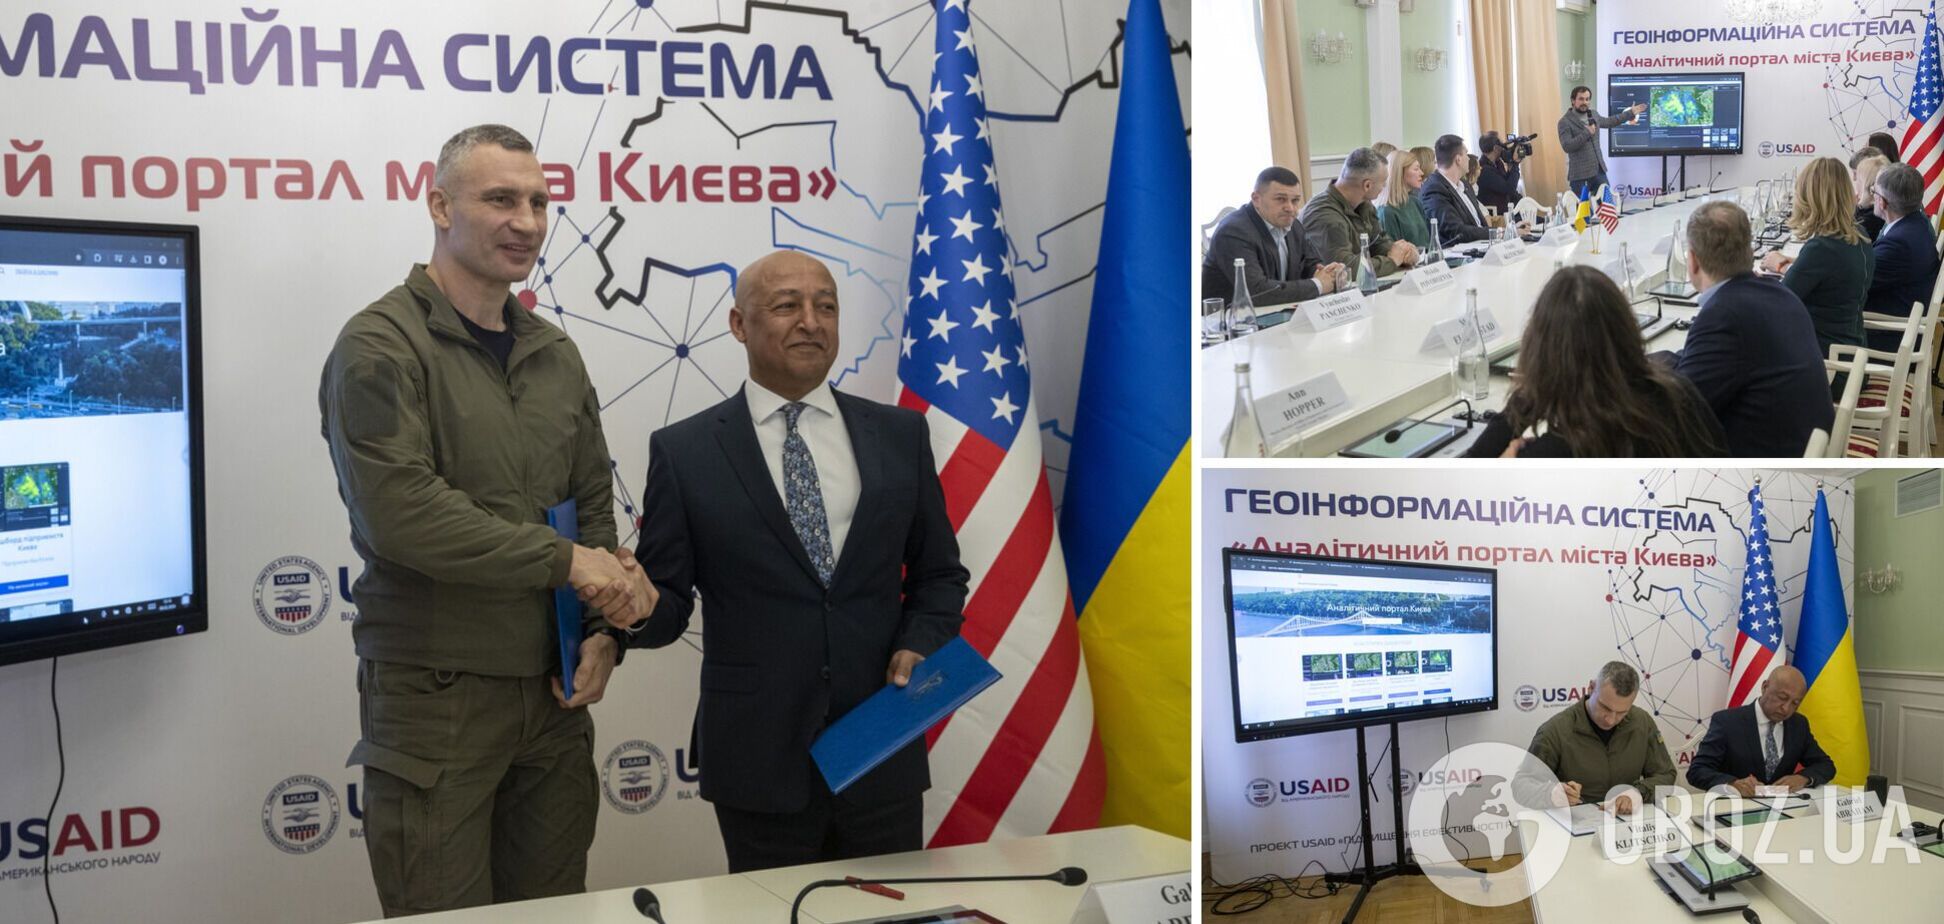 Київ підписав угоду з проєктом USAID 'ГОВЕРЛА' про створення Аналітичного порталу столиці, – Кличко